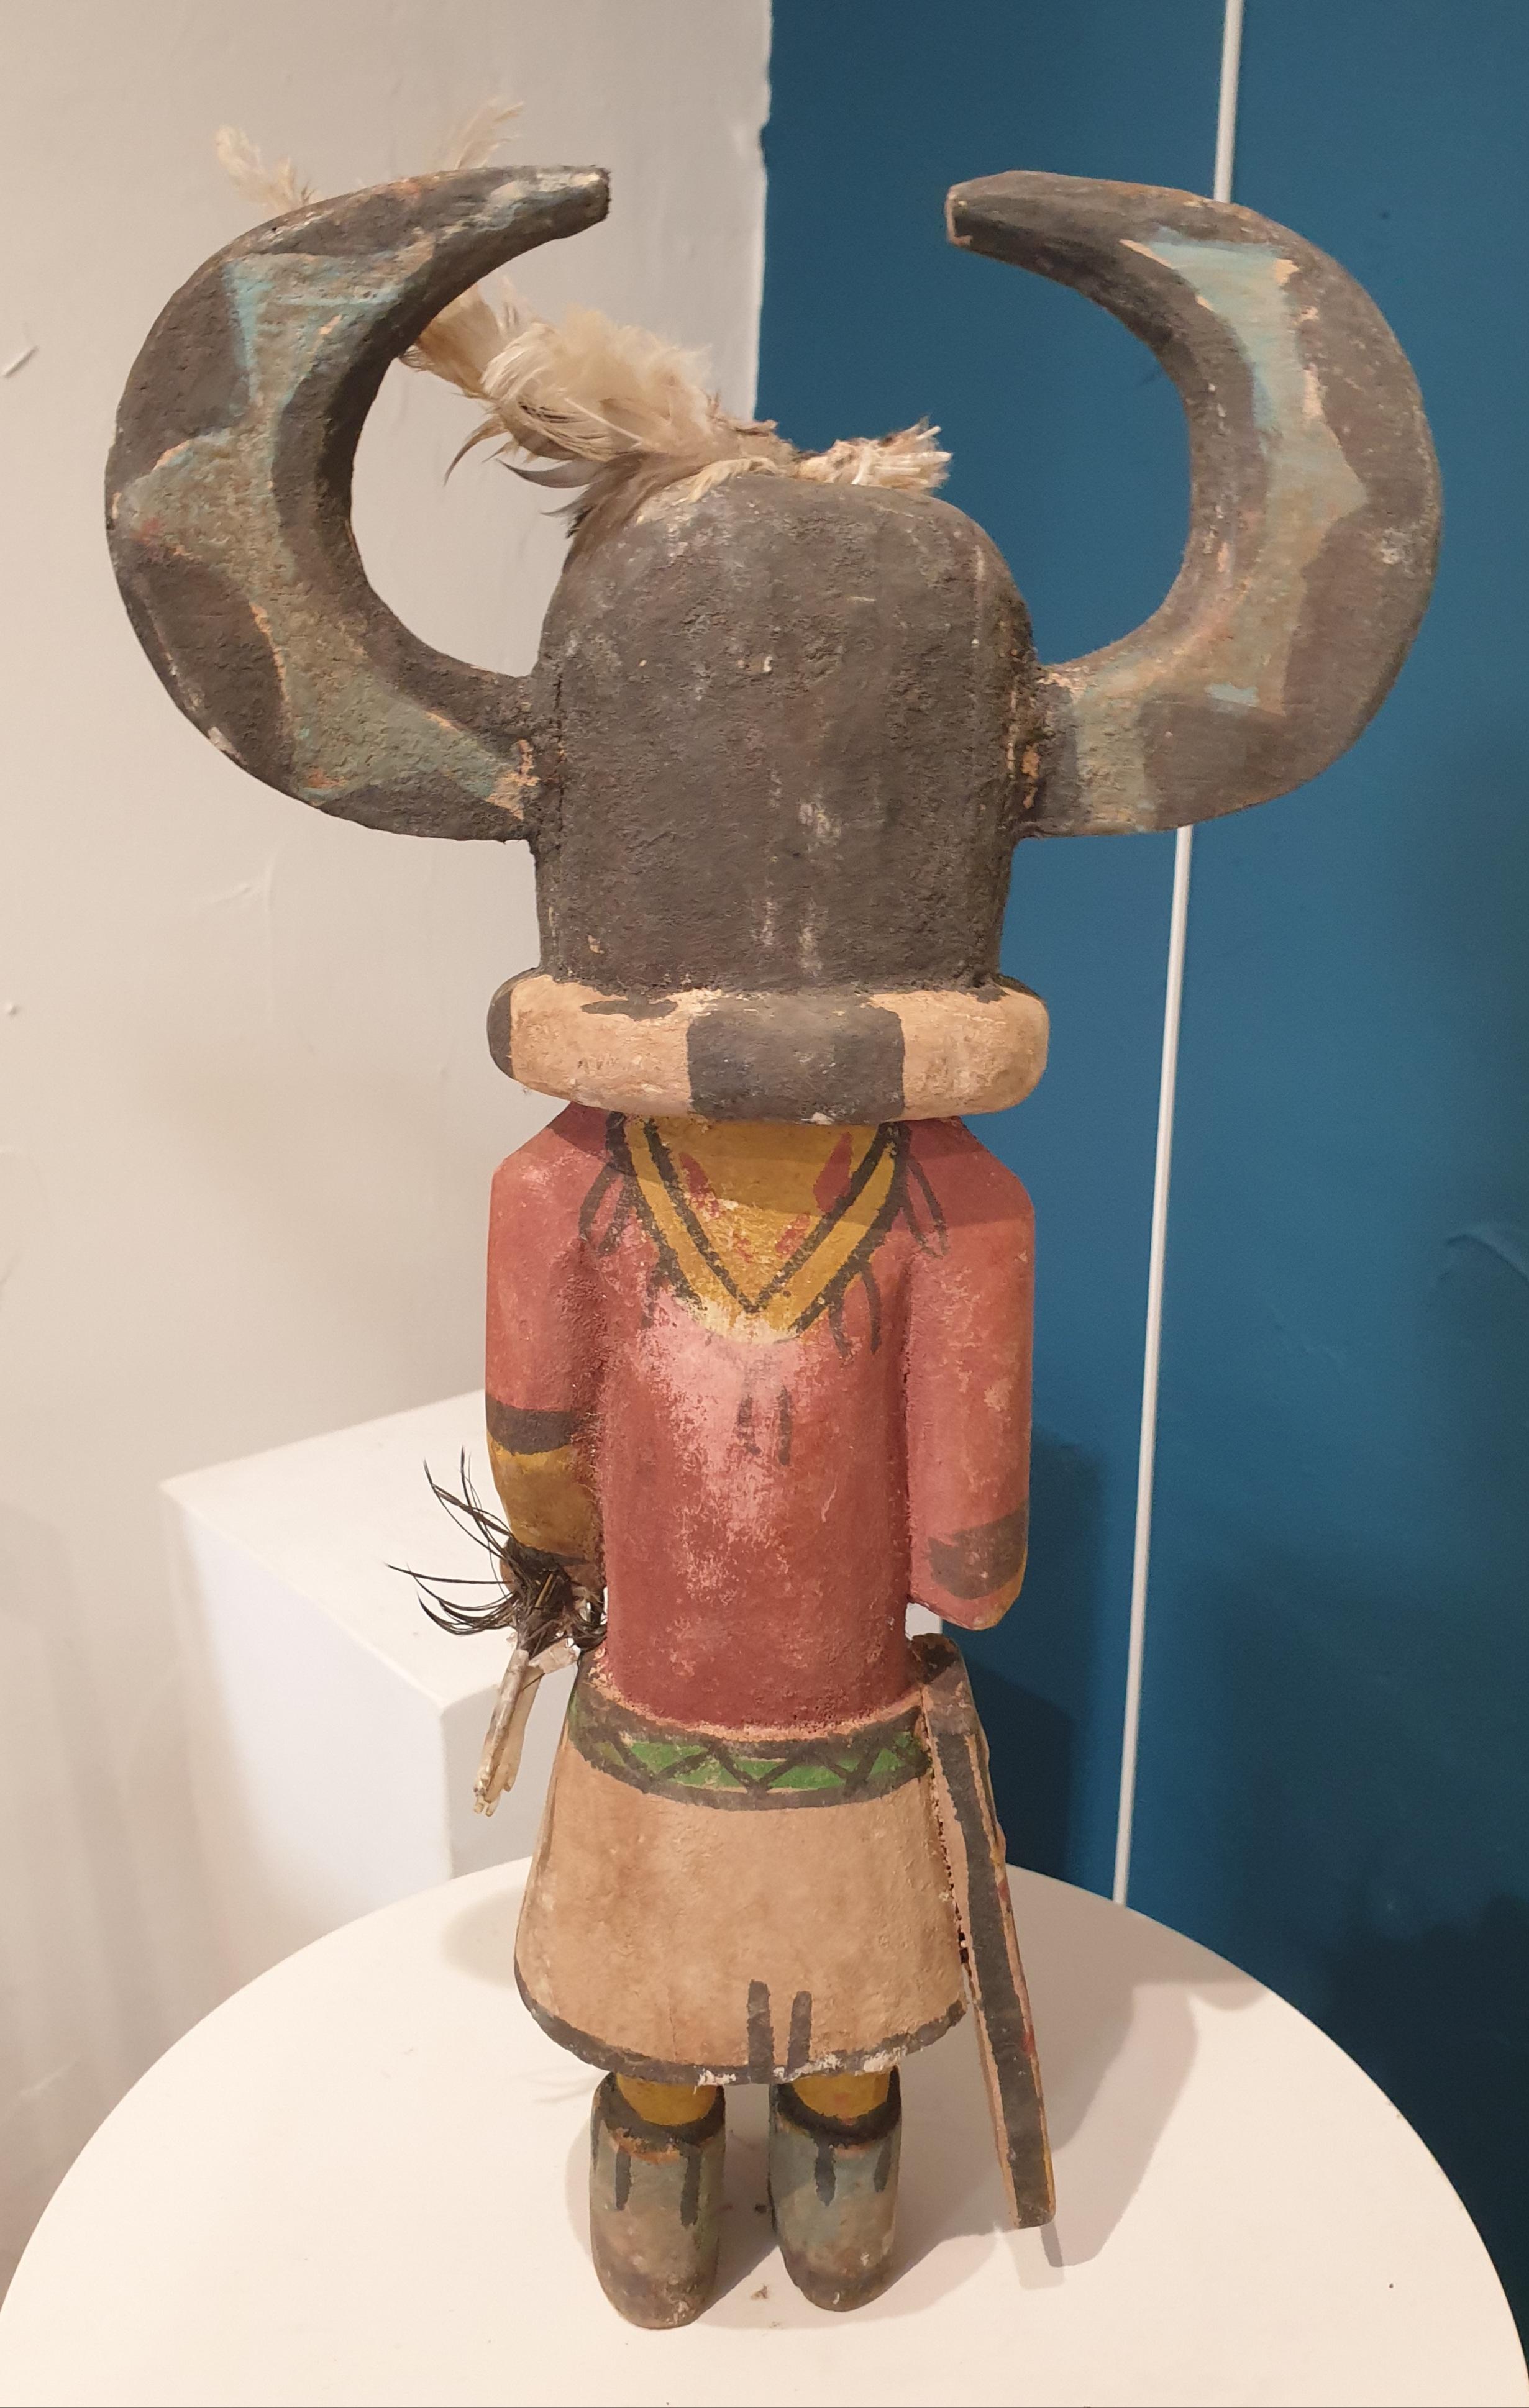 Effigie indigène nord-américaine en bois sculpté et peint, Hopi Katsina ou poupée Kachina. Cette poupée fait partie d'un groupe de huit poupées, toutes vendues individuellement ou en set, sur 1stdibs.

Les poupées Hopi Katsina sont des effigies en